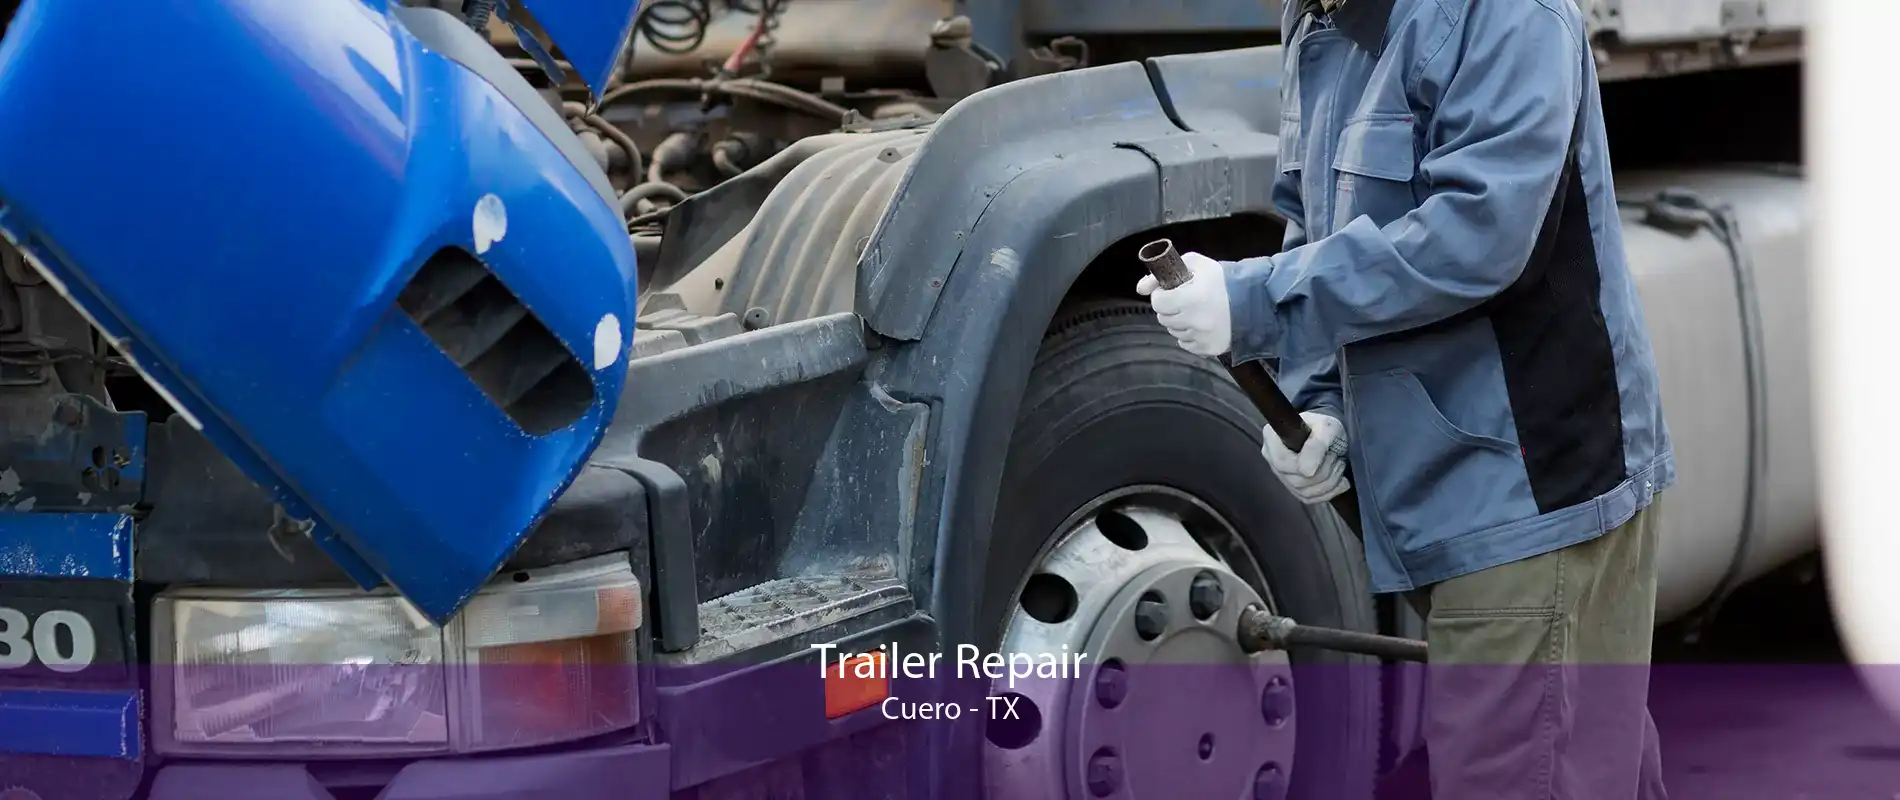 Trailer Repair Cuero - TX